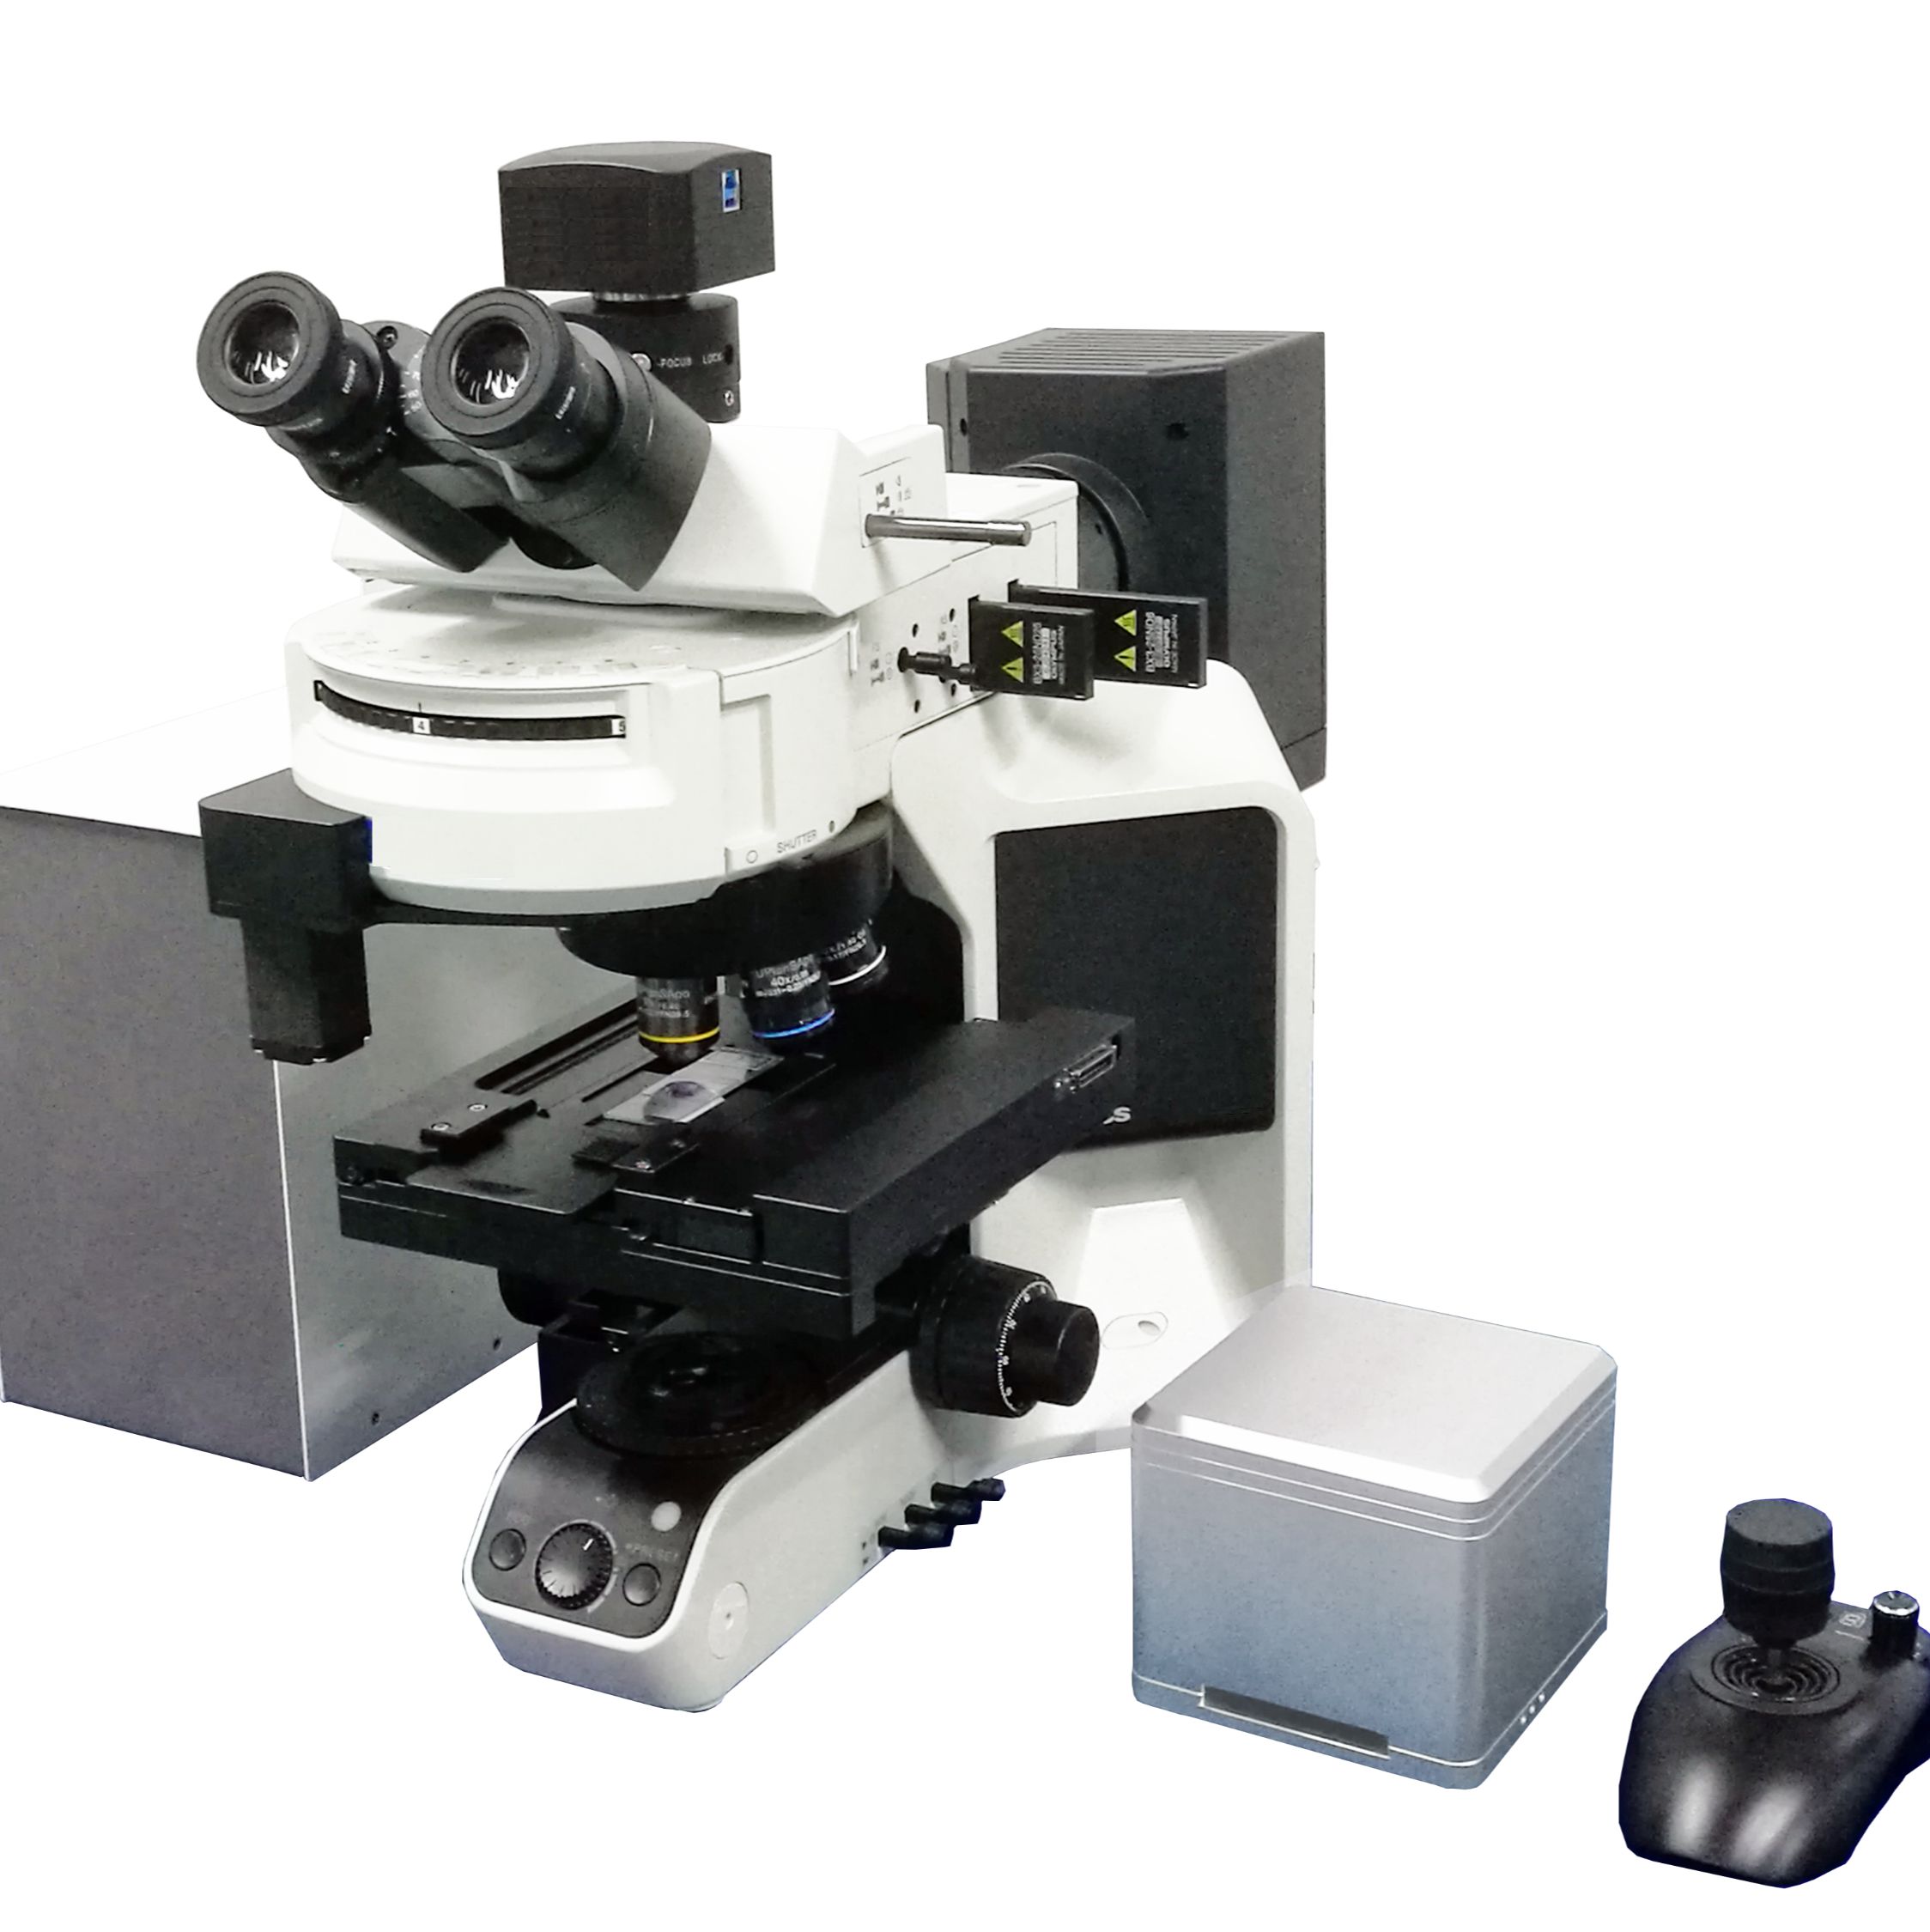 病理切片扫描显微镜/病理切片扫描仪/定制扫描显微镜